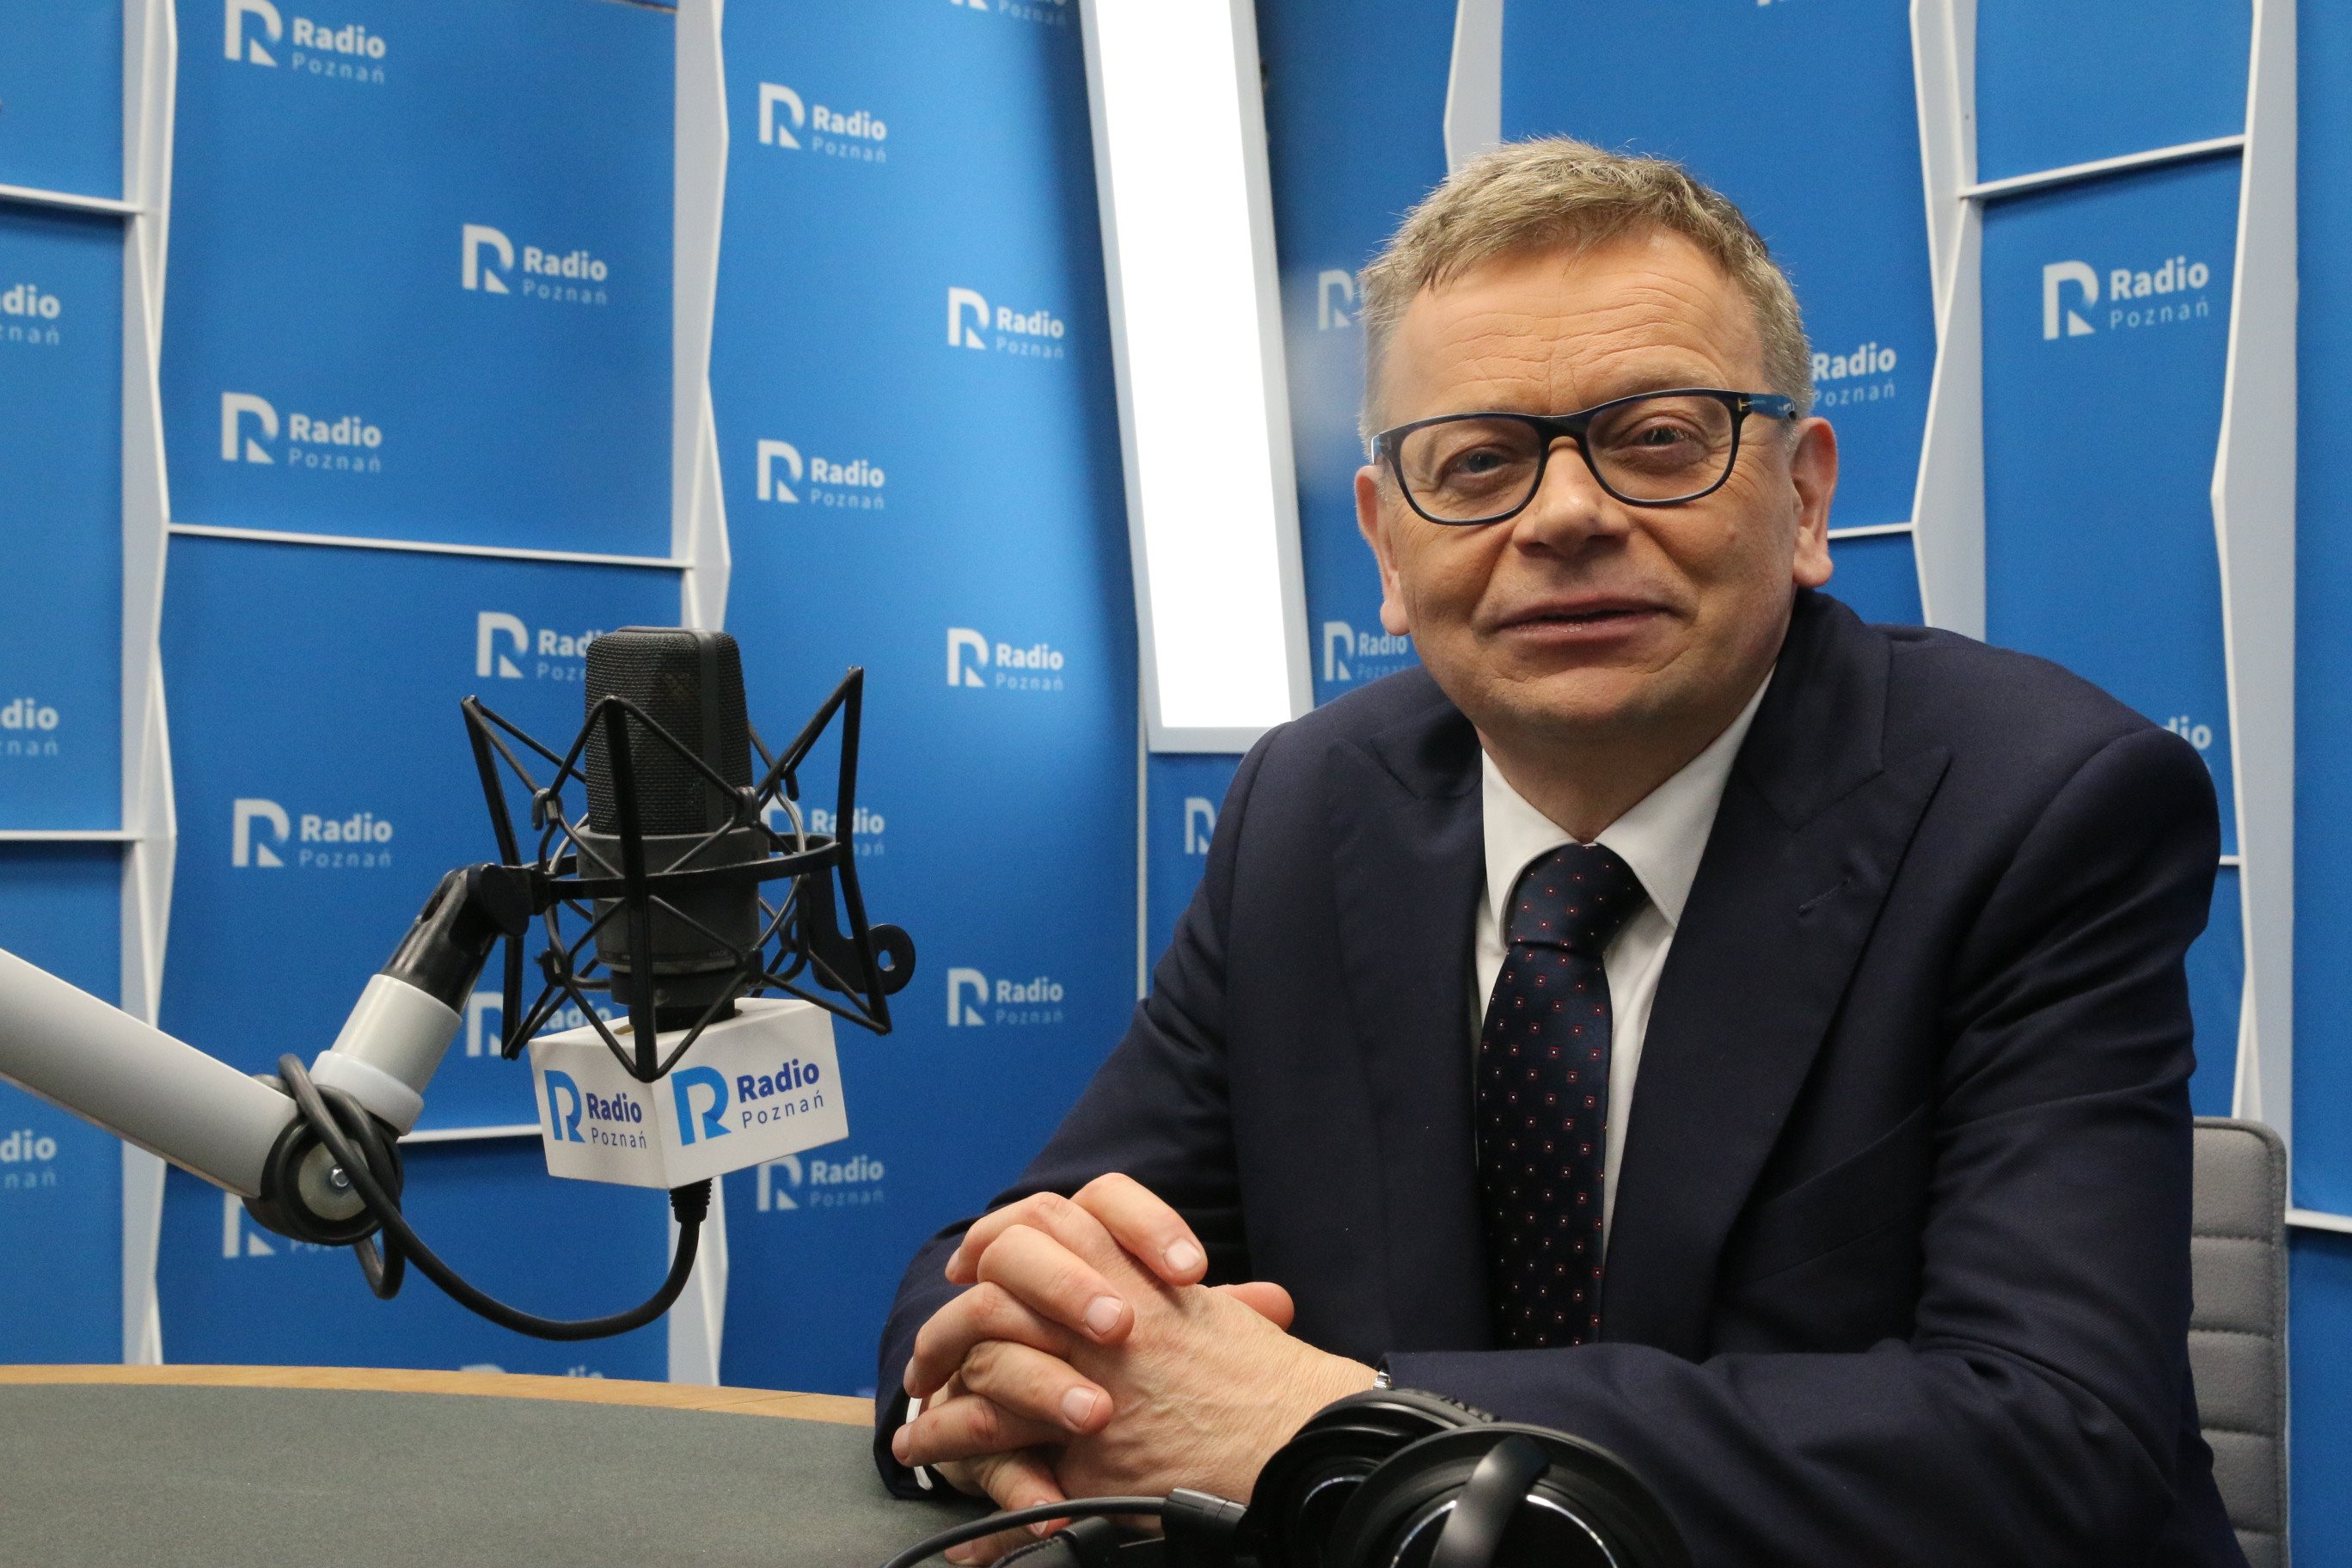 Tadeusz Zysk i Jacek Jaśkowiak radio poznań  - Błażej Prochera